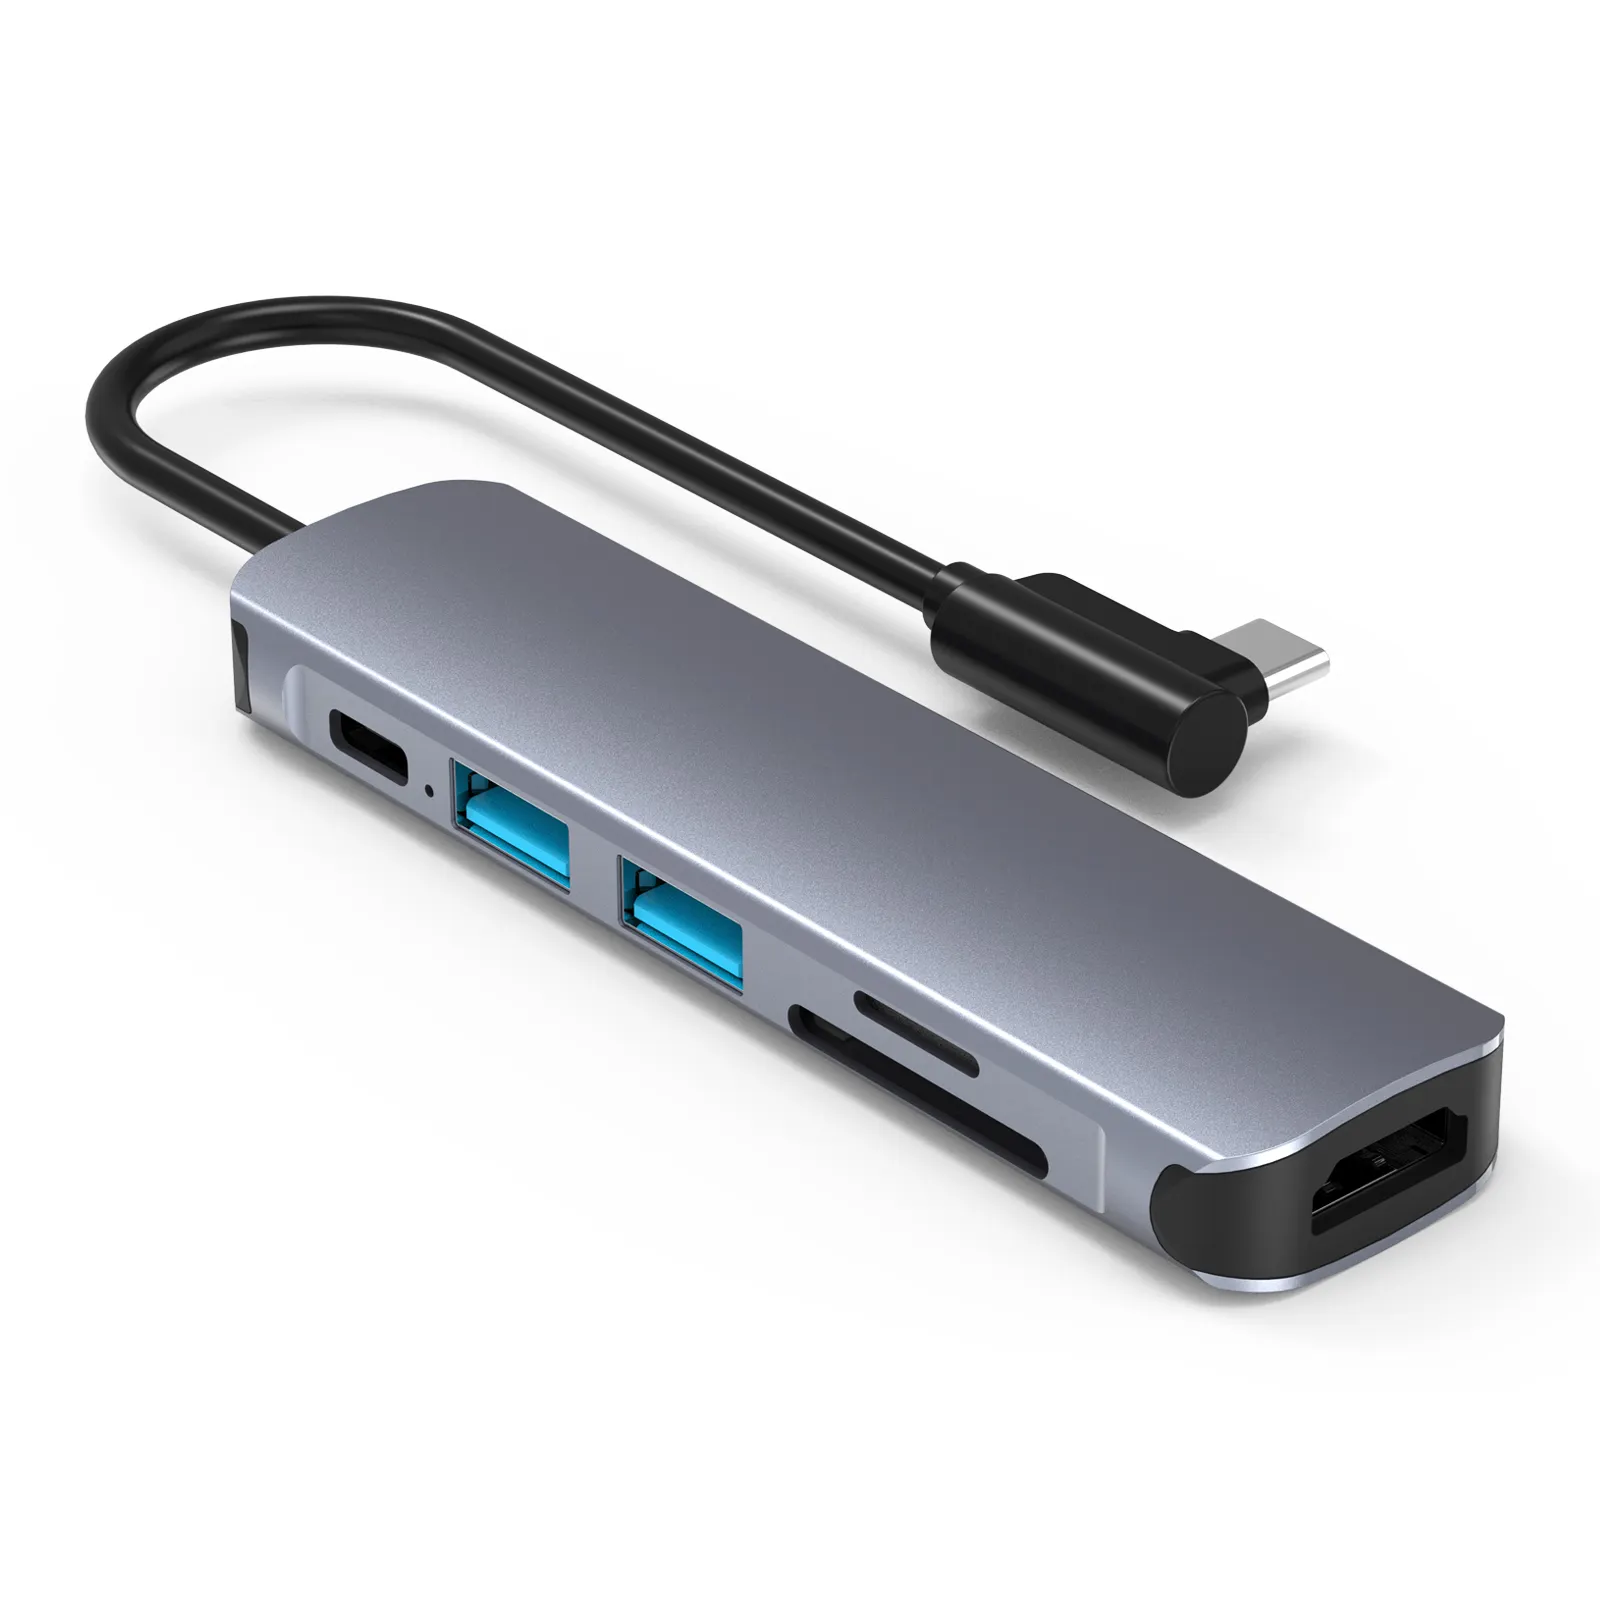 Hub USB Aluminium Hub USB Tipe C 3 0 Adaptor Multifungsi 6 In 1 untuk Macbook Pro Air